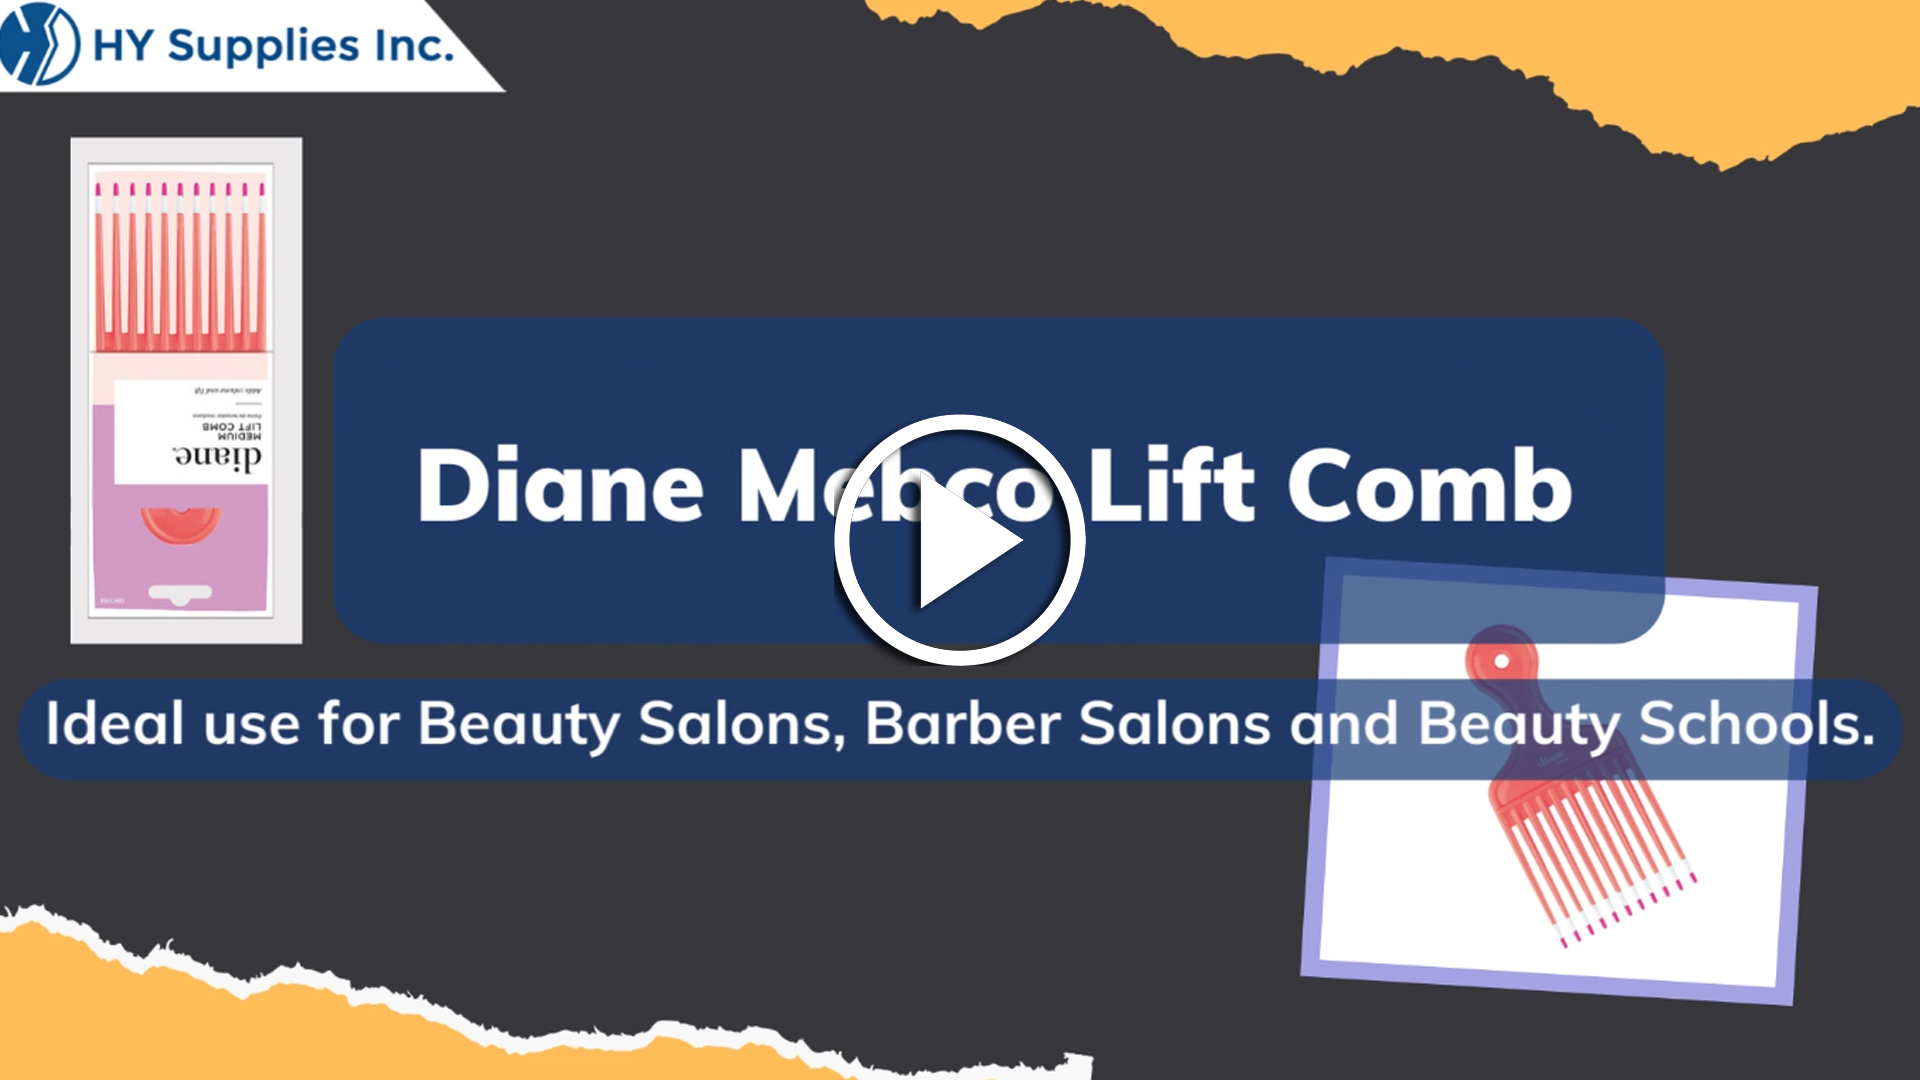 Diane Mebco Lift Comb